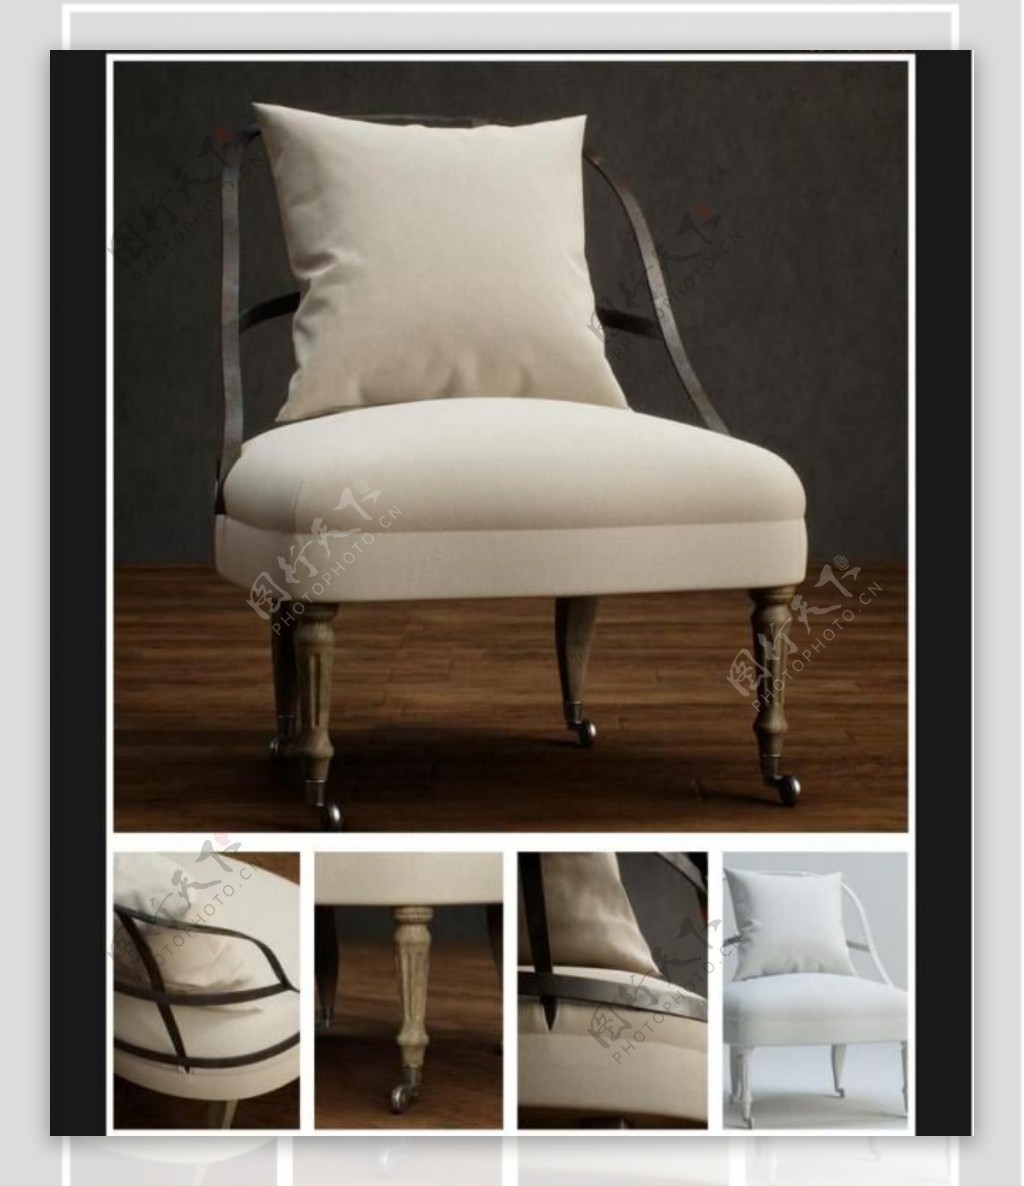 白色椅子素材3模型素材